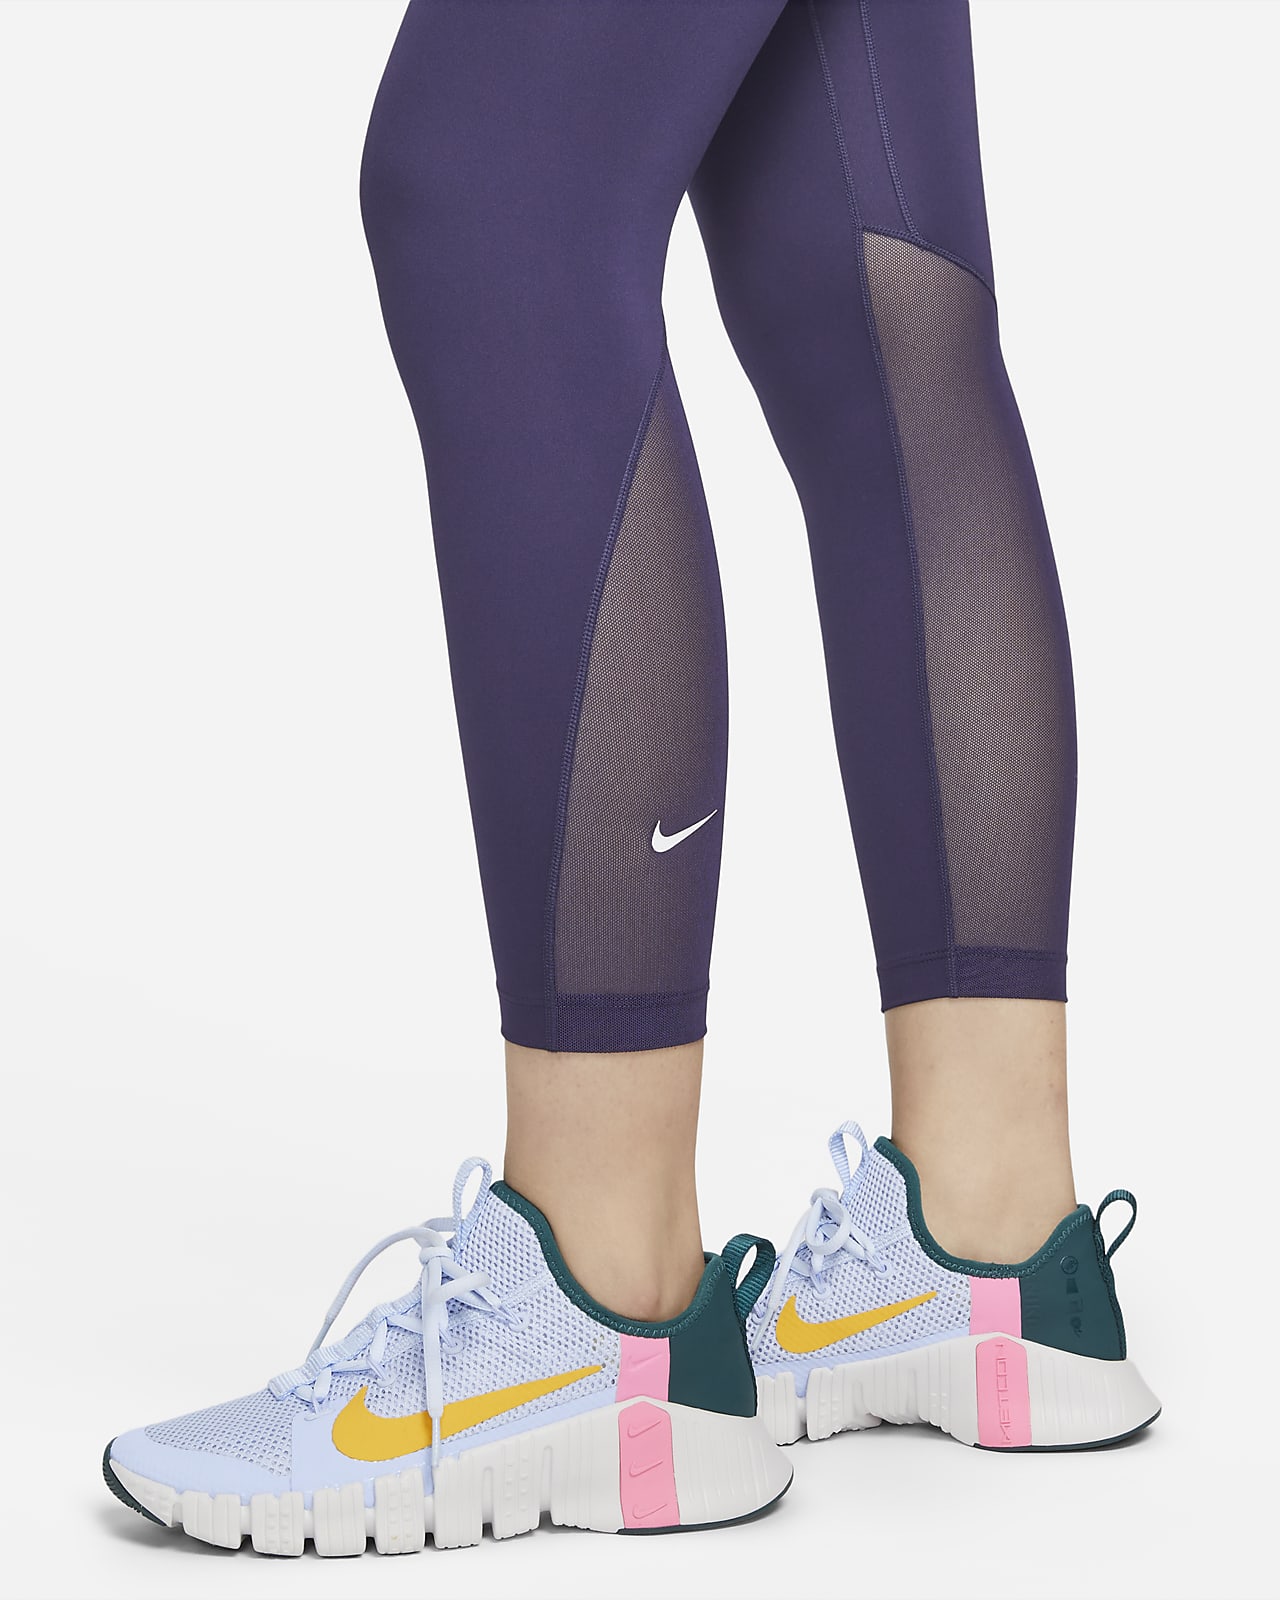 NWT $70 Nike Air Dri-FIT Women's Fold-Over Waist 7/8 Leggings